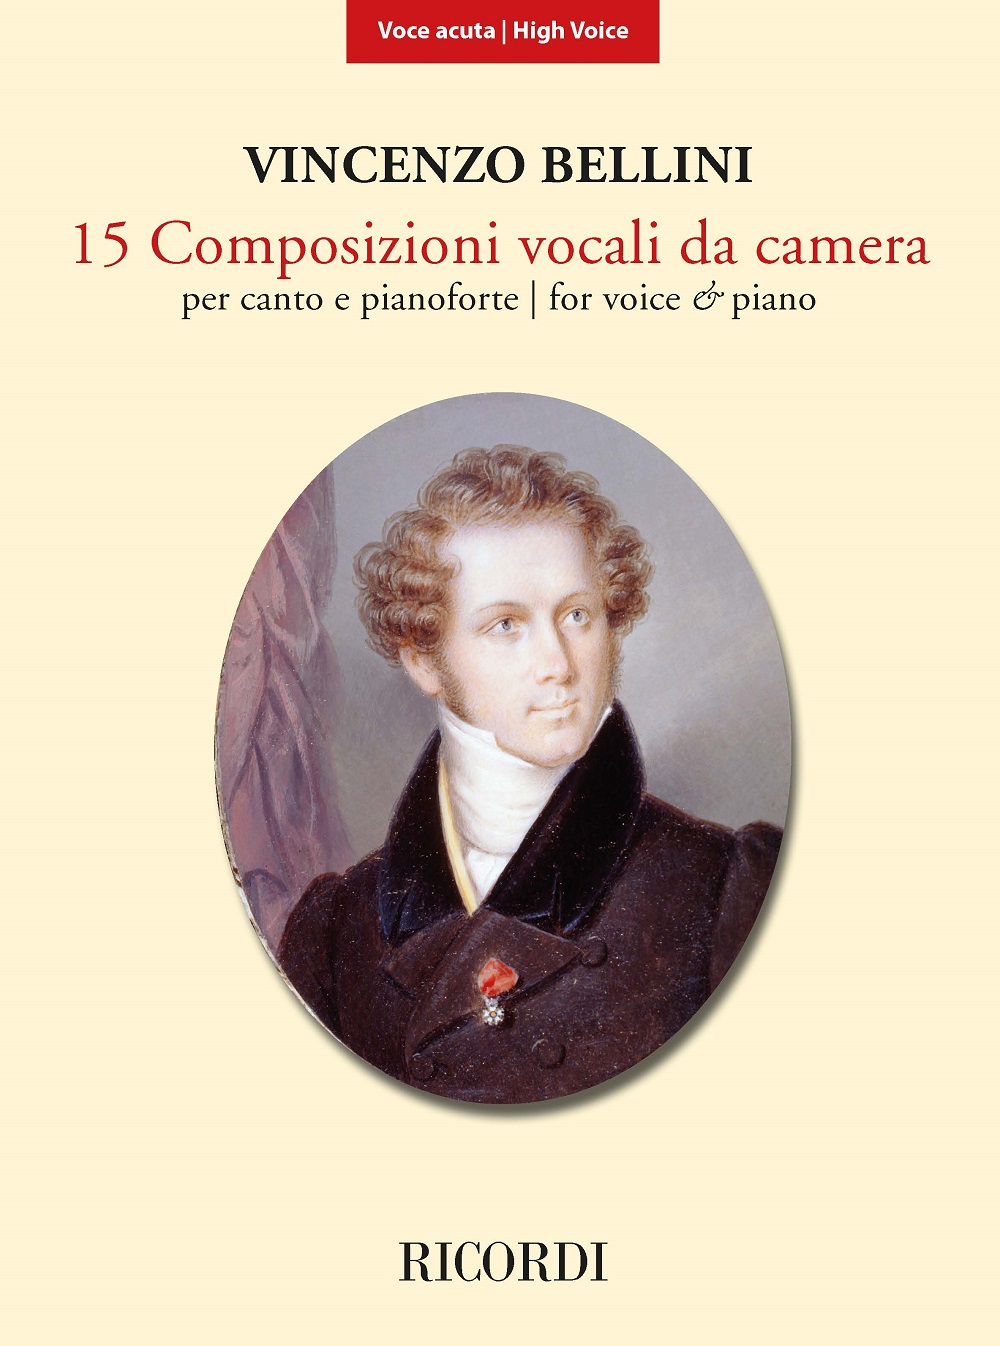 Vincenzo Bellini: 15 Composizioni vocali da camera: High Voice: Vocal Album